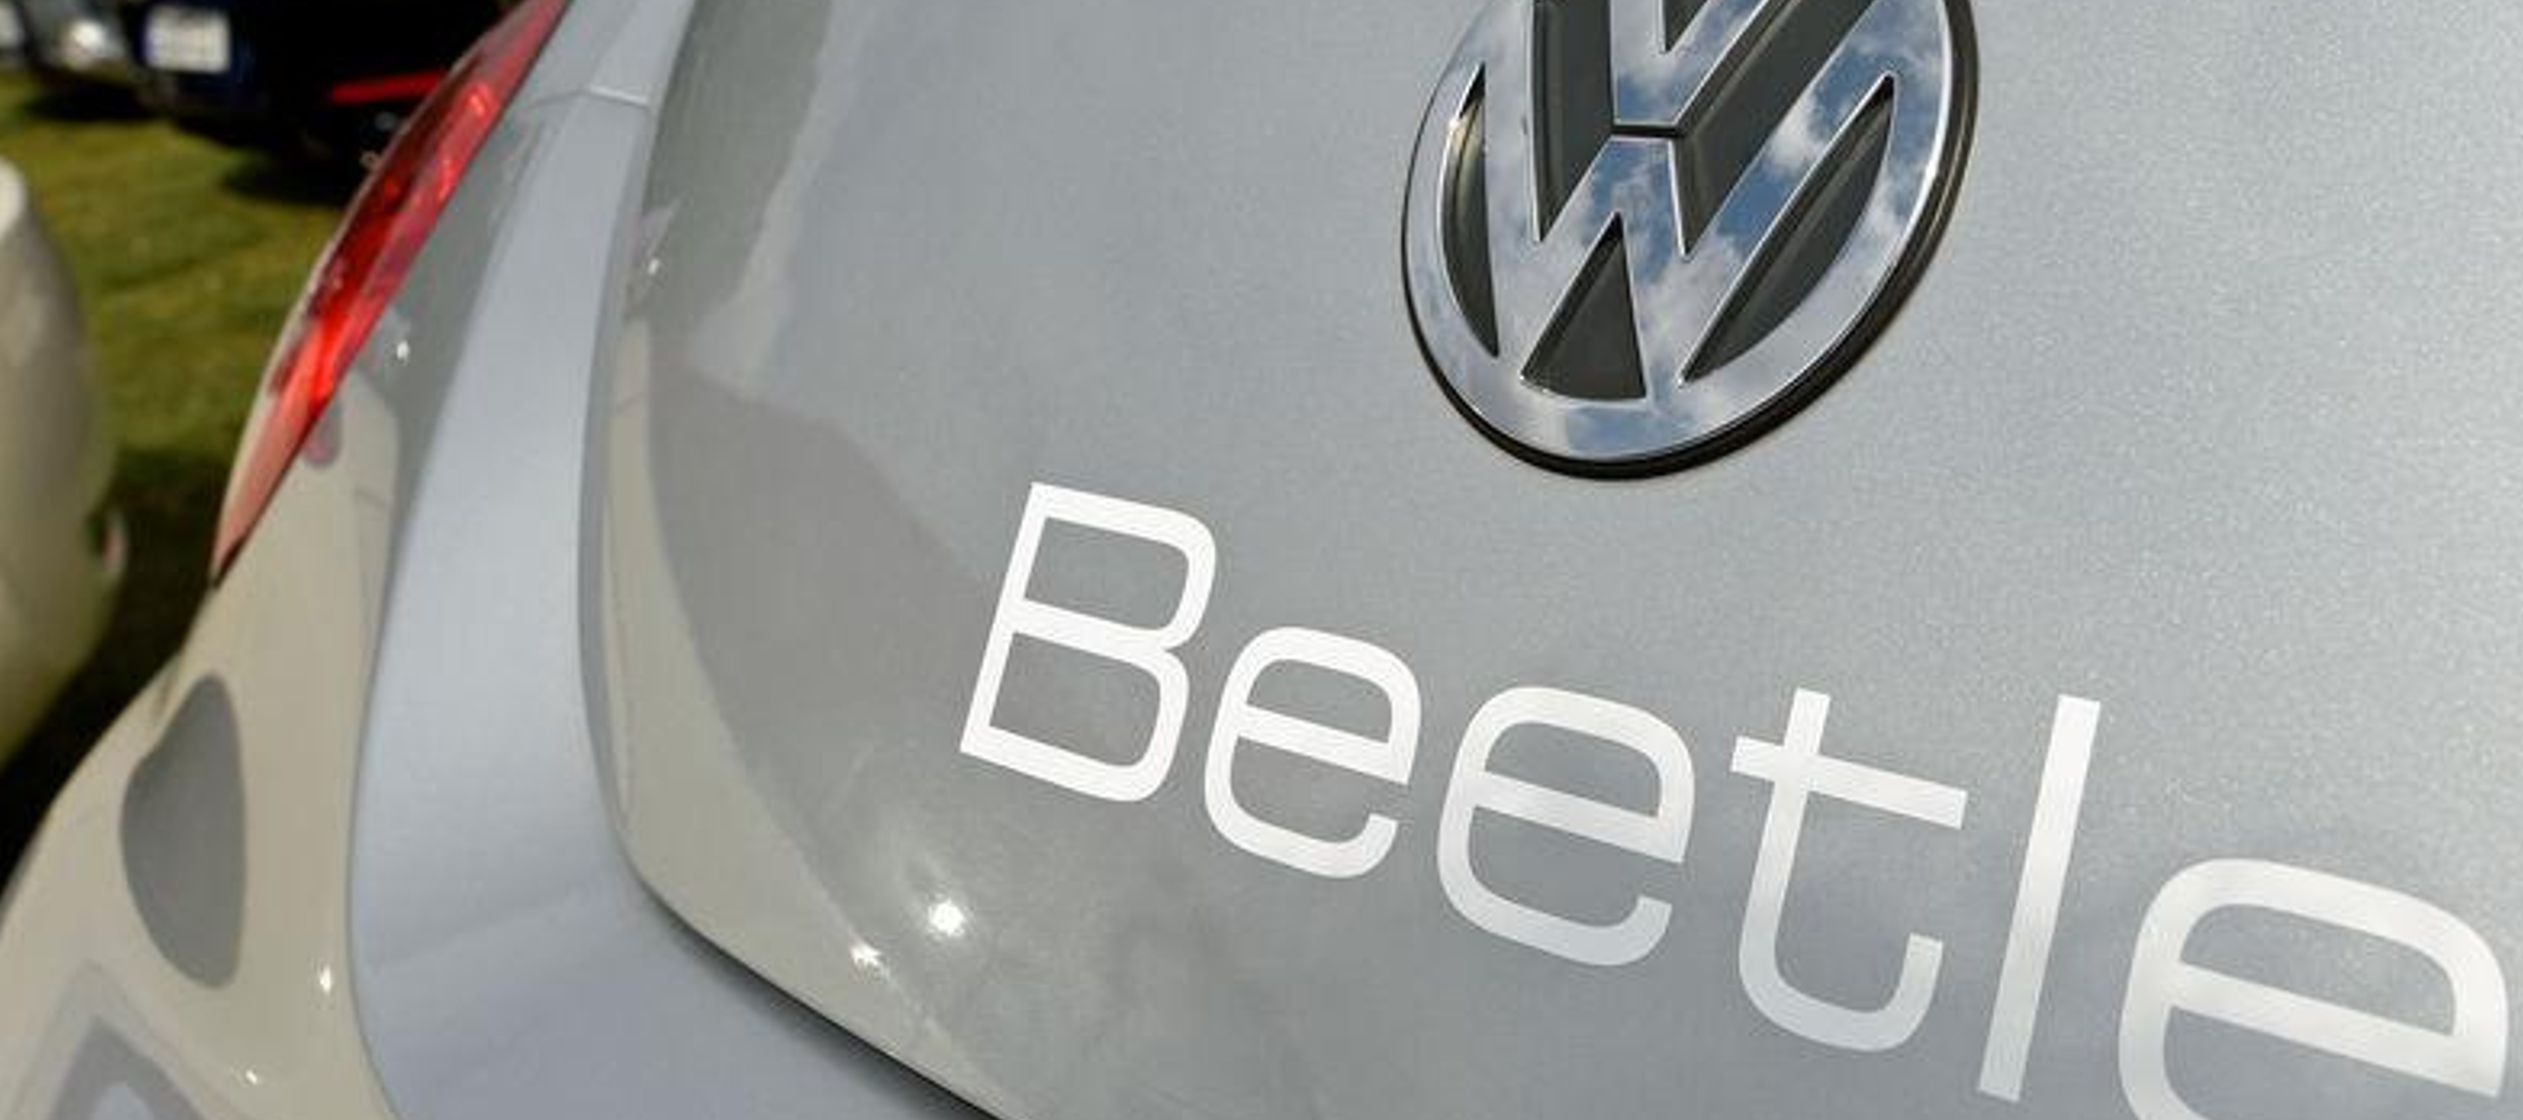 El Nuevo Beetle fue un éxito durante sus primeros años, con ventas de más de...